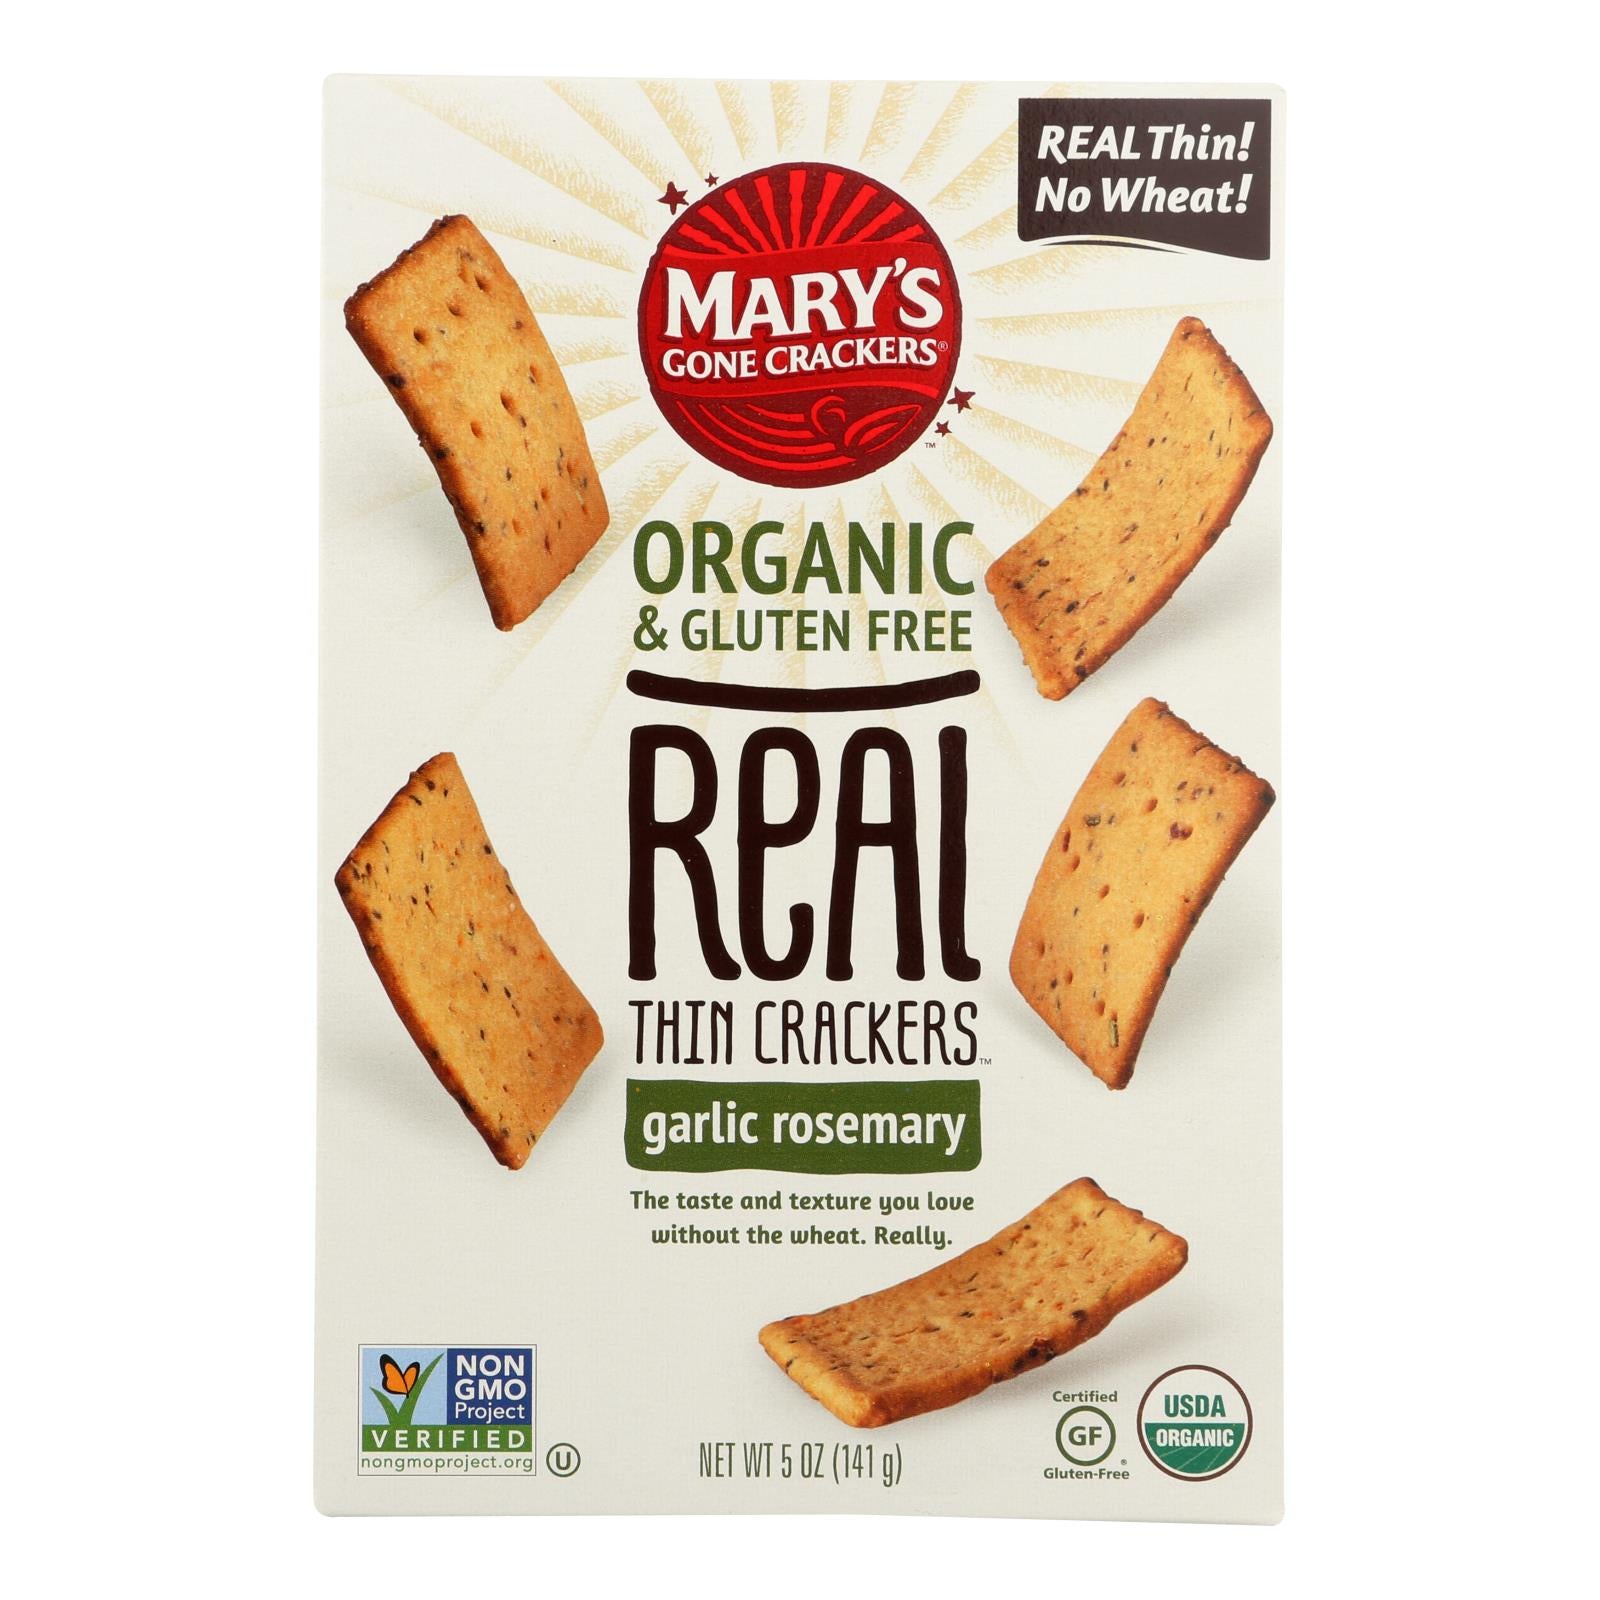 Craquelins de Mary's Gone, Mary's Gone Crackers Craquelins minces biologiques et sans gluten - Caisse de 6 - 5 OZ (paquet de 6)